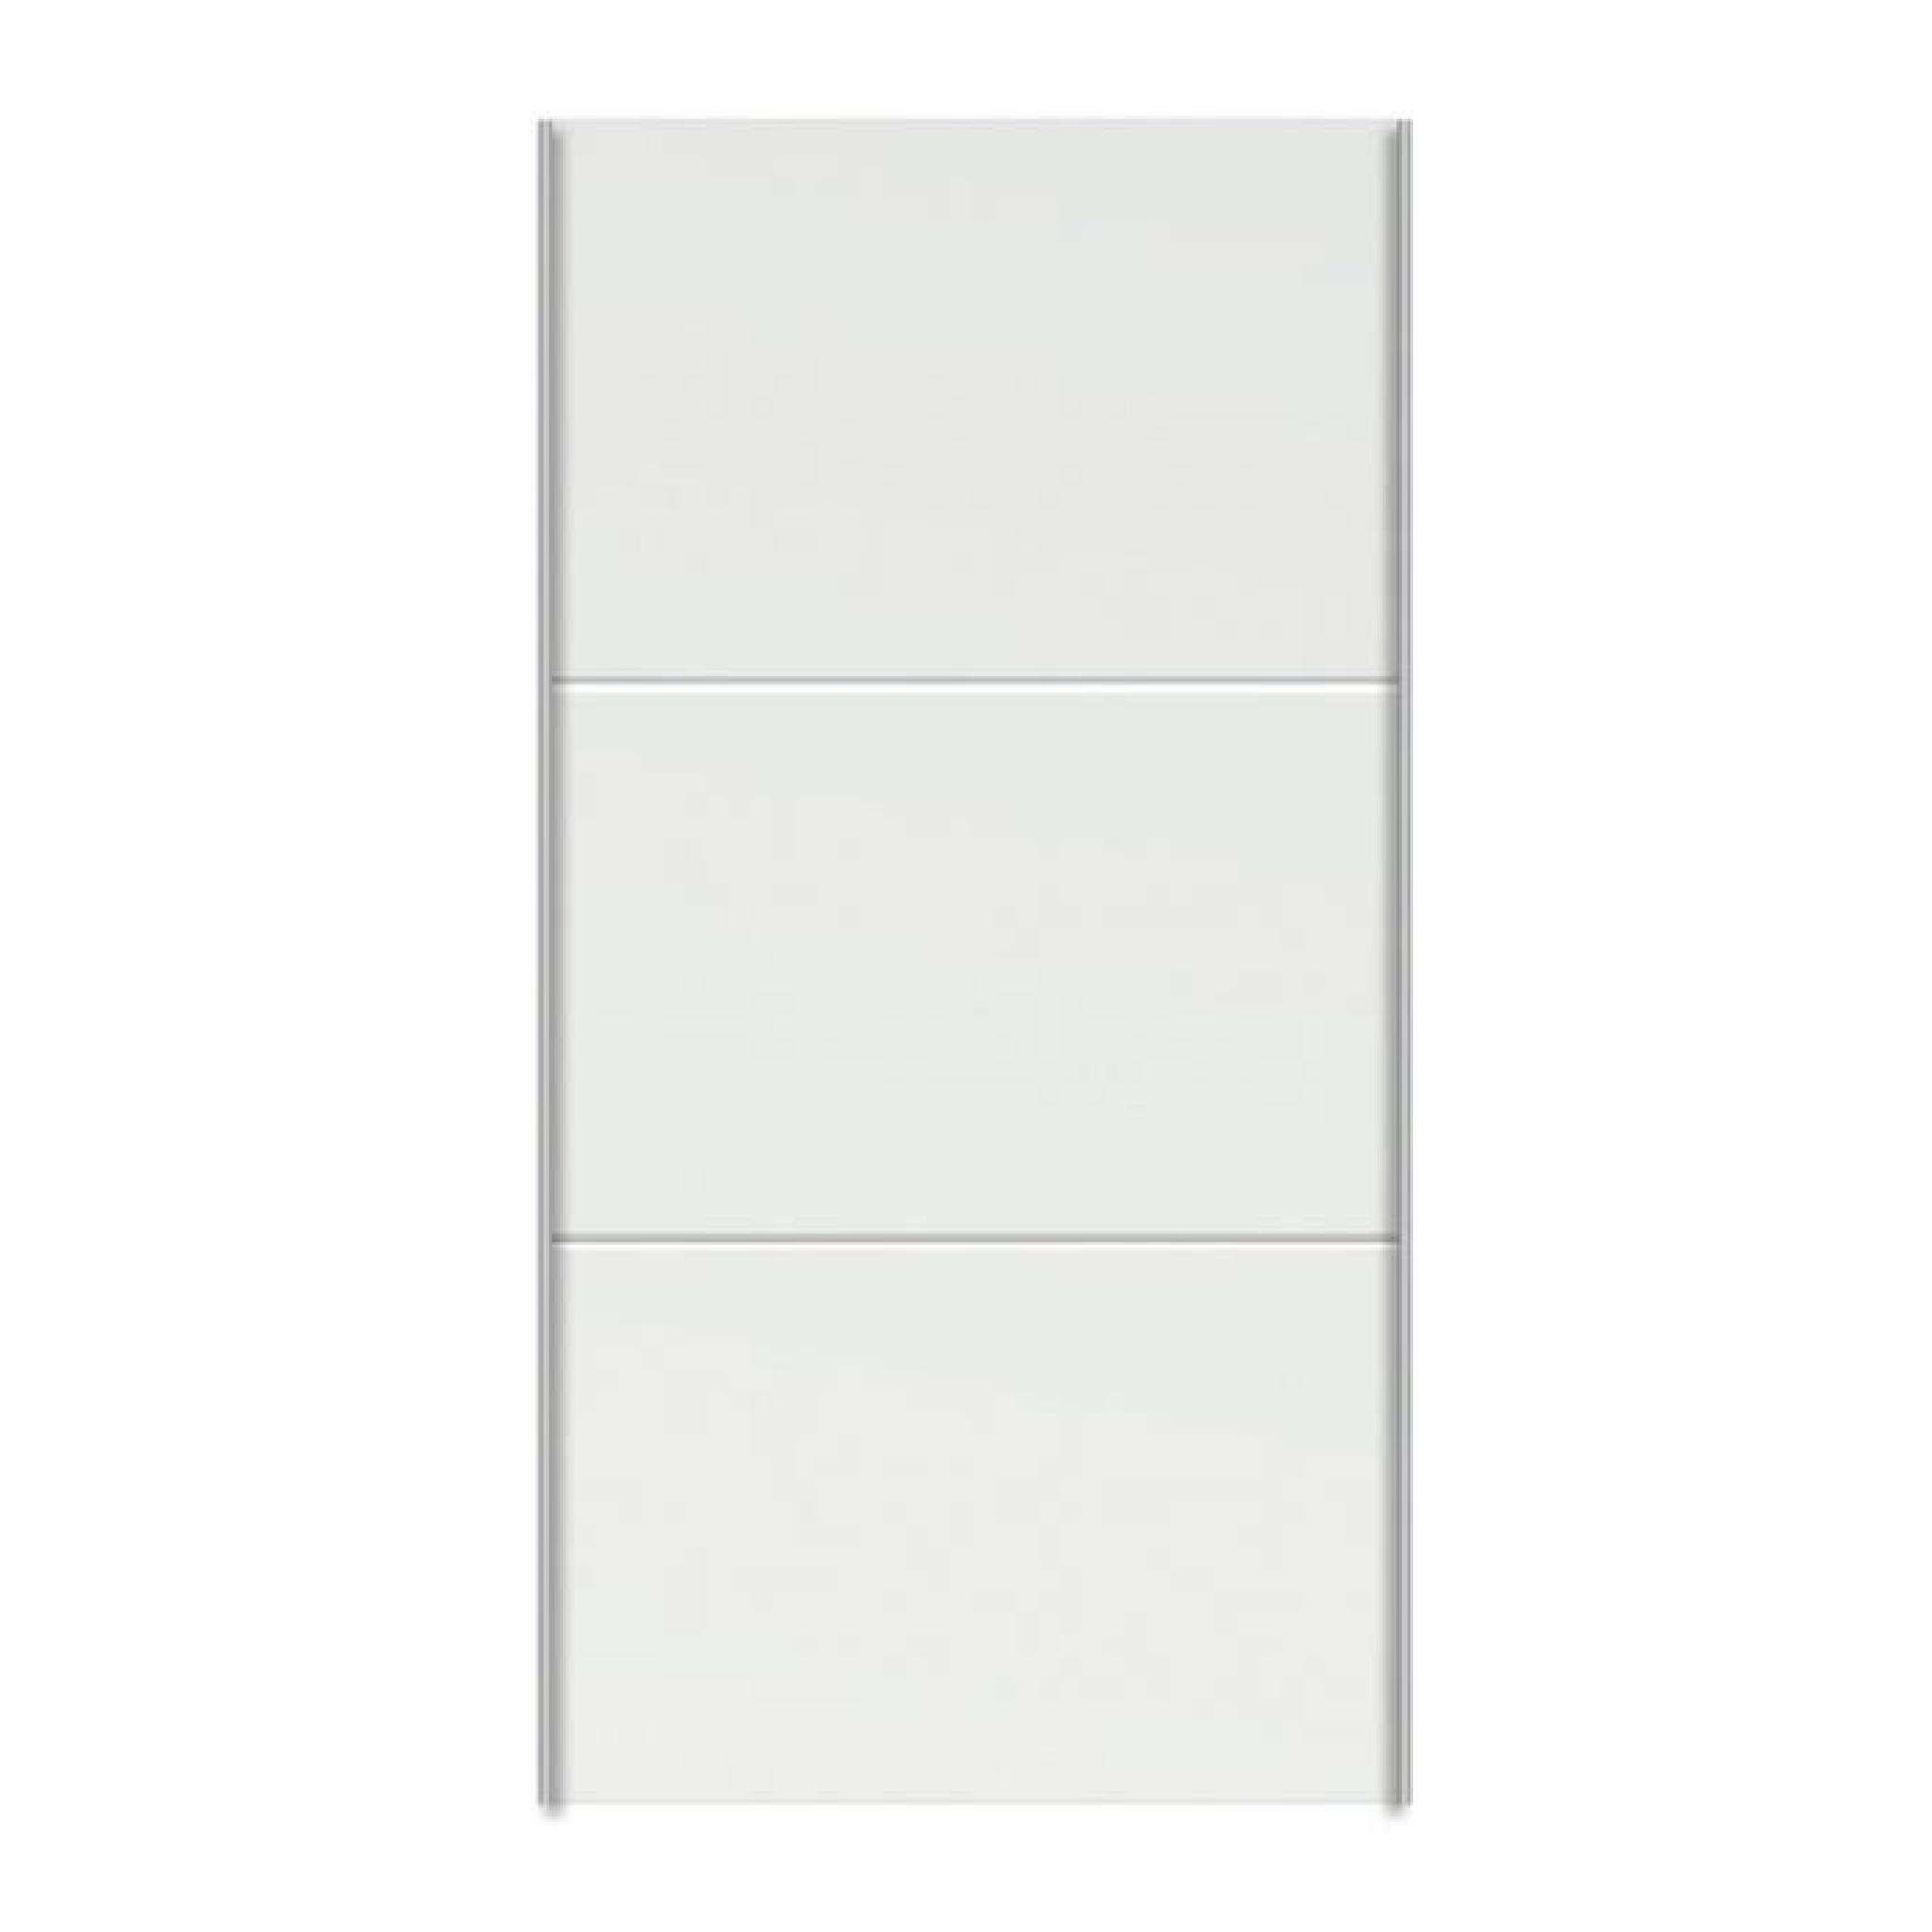 Porte coulissante blanc pour caisse de dressing - Dim : H 227 x L 100 x P 1 cm